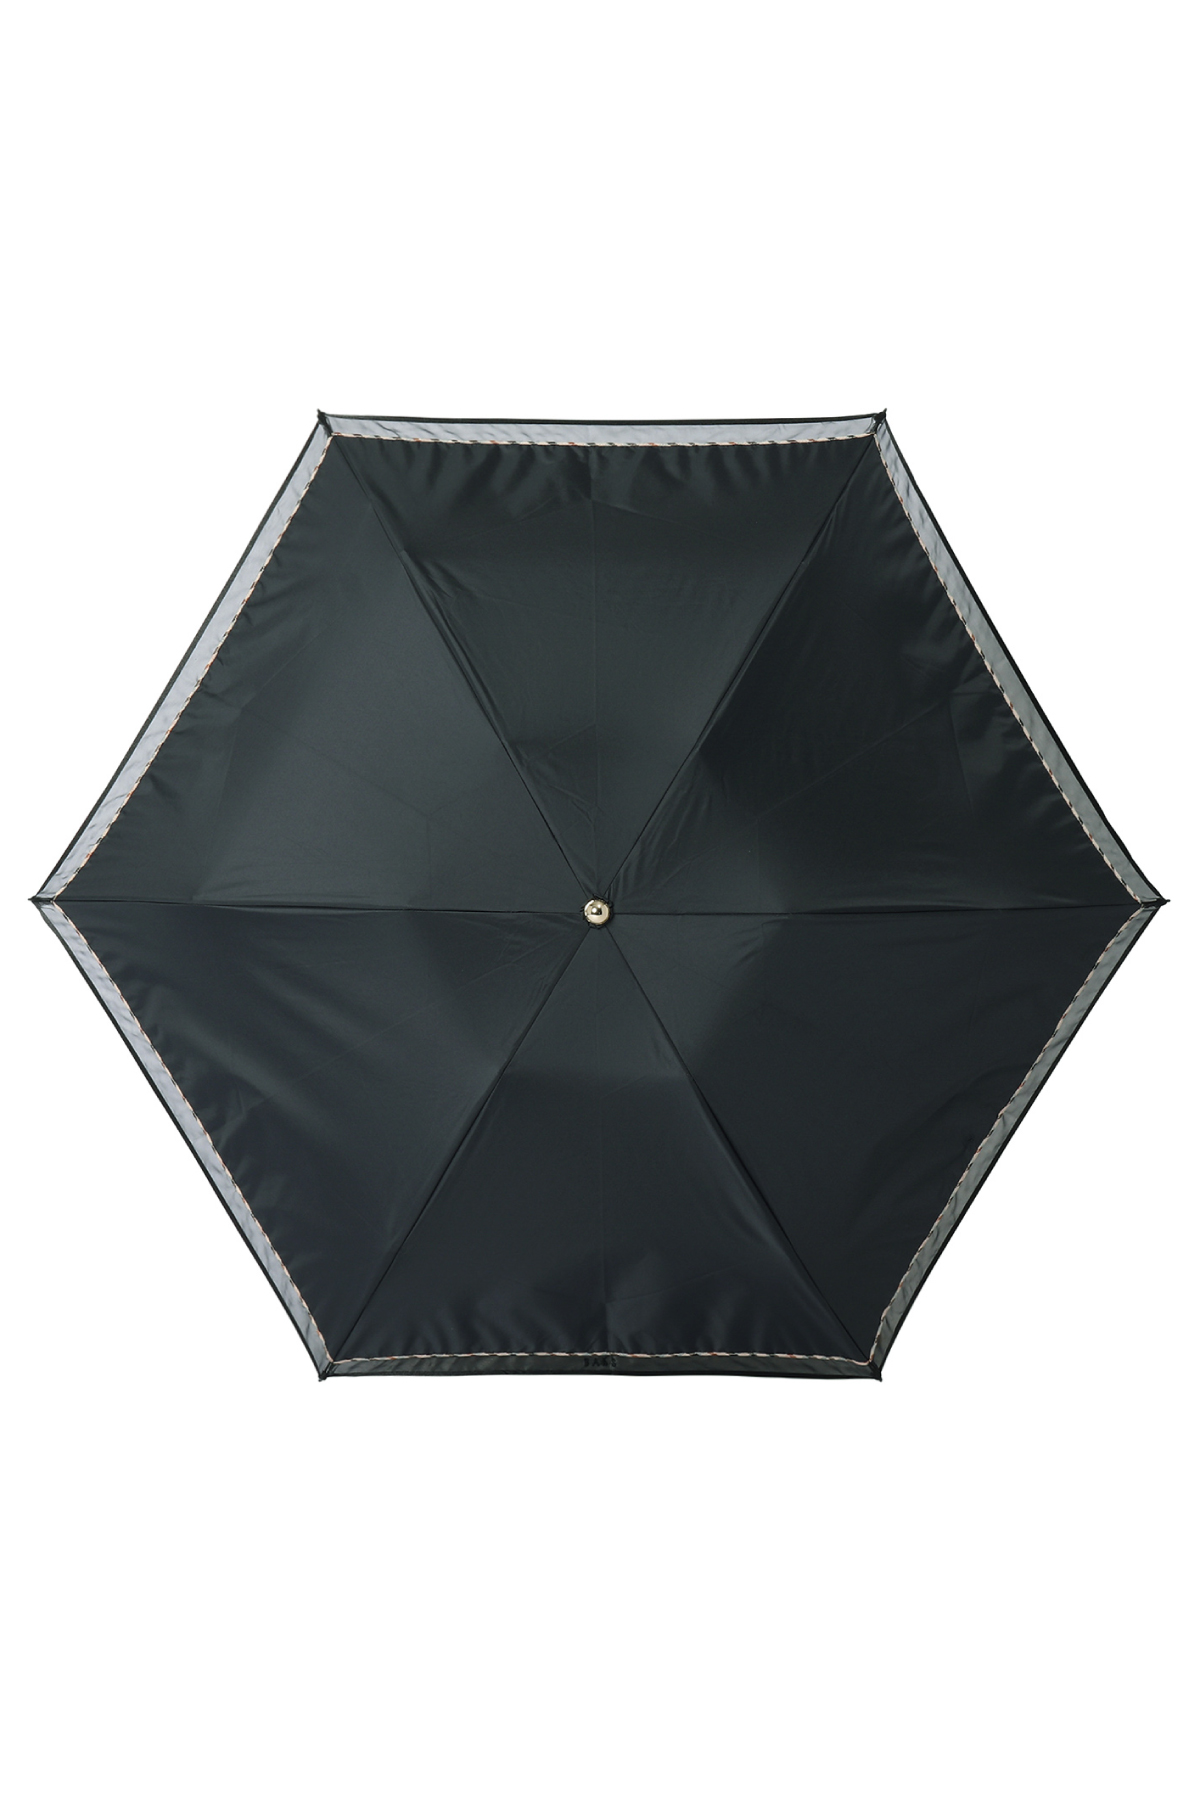 【日傘】ミニ折りたたみ傘オーガンジーレース 詳細画像 2